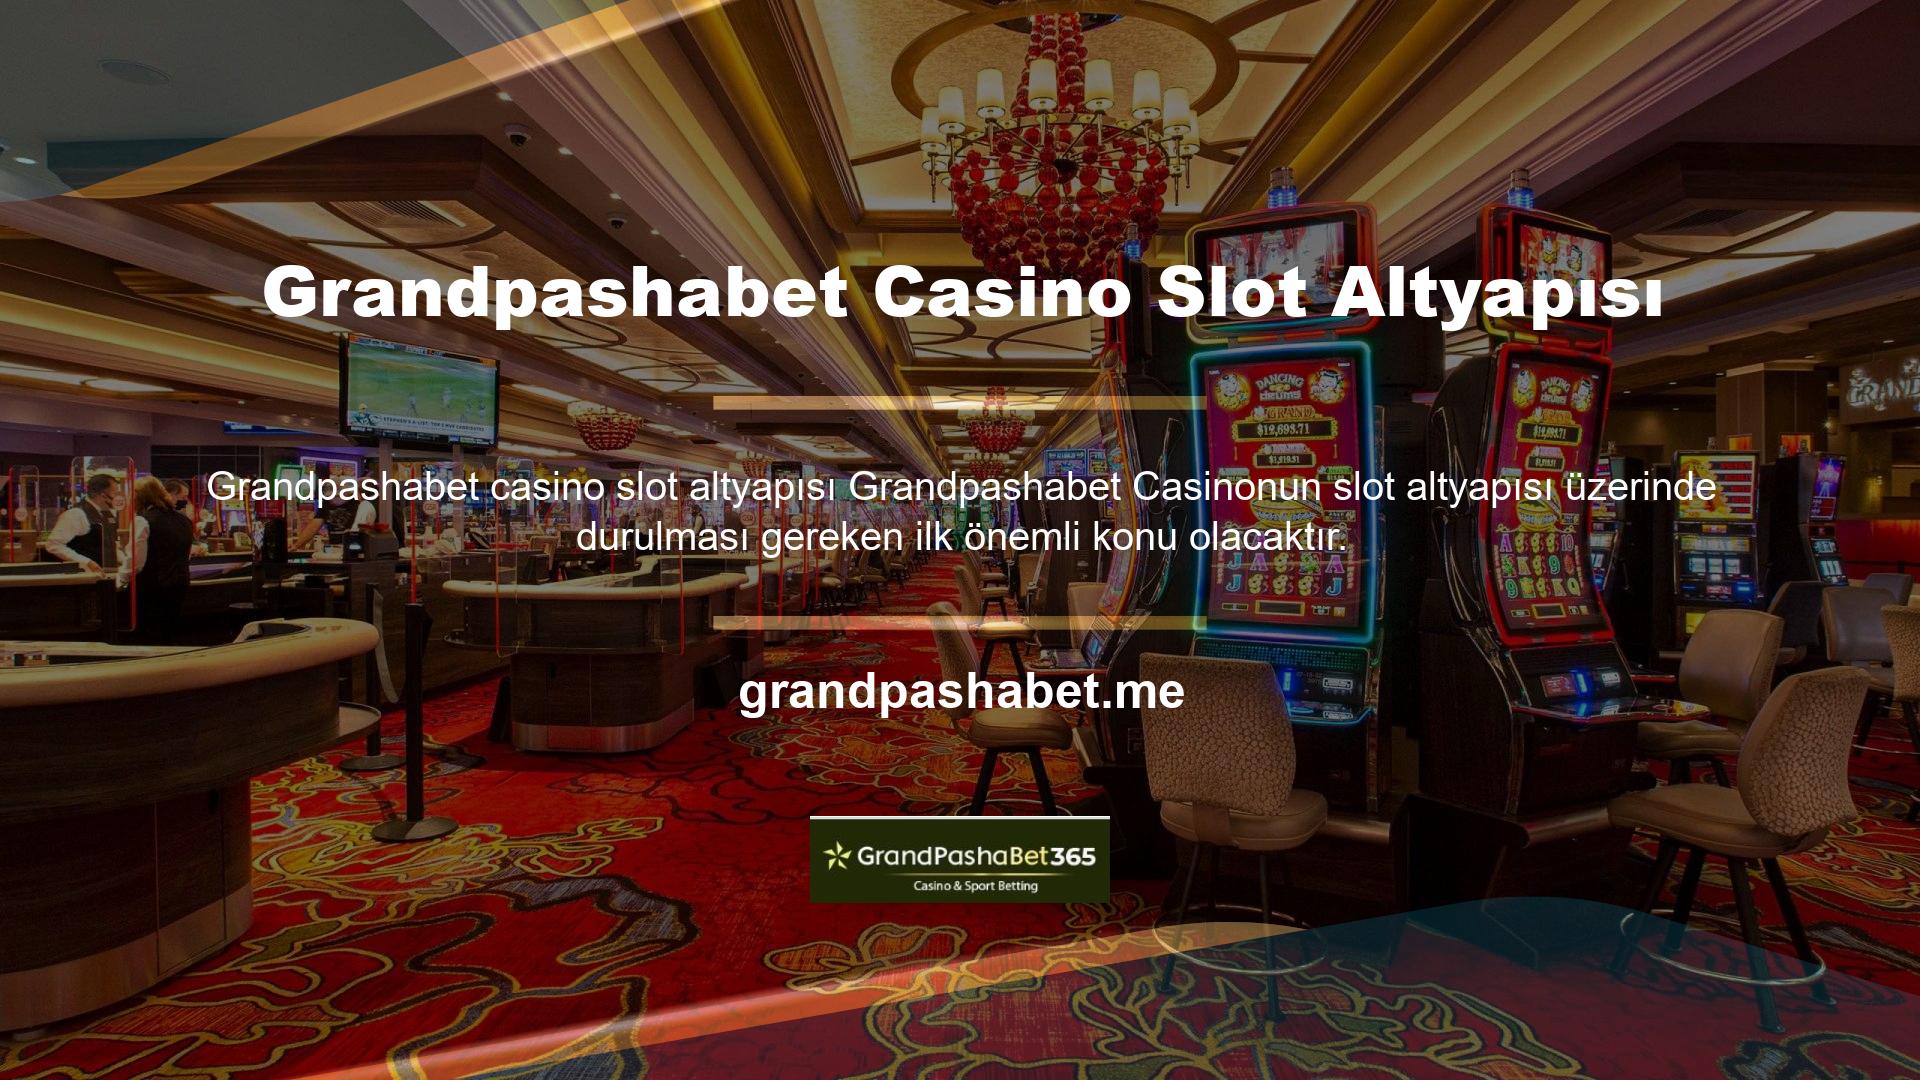 Casinolar farklı oyun sunar, ancak slot makineleri en popüler olanıdır